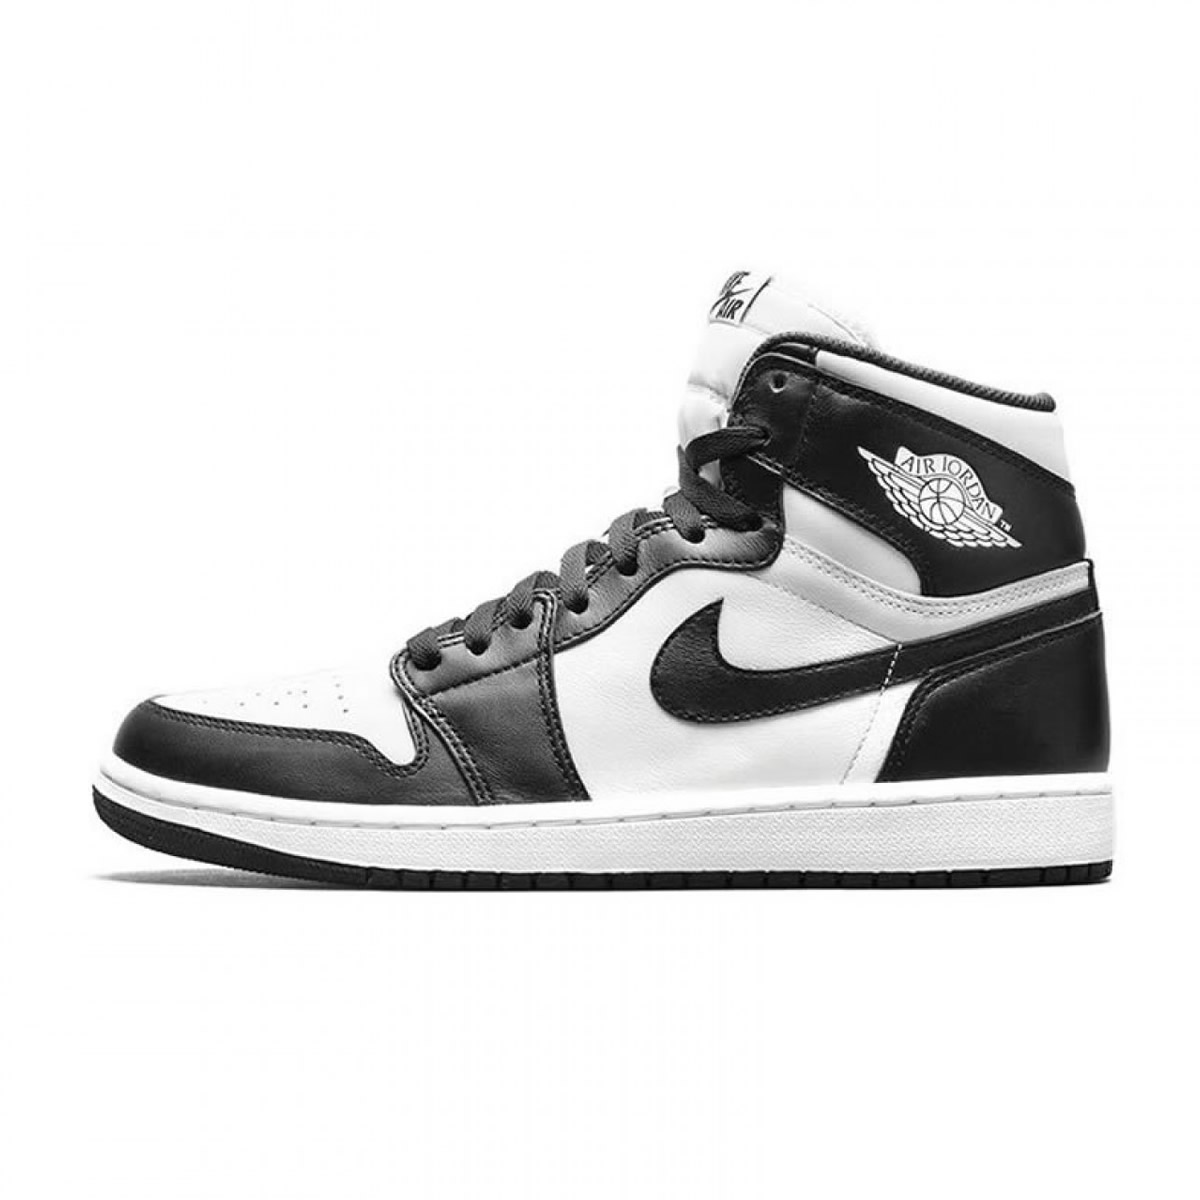 Nike Air Jordan 1 Retro High Og Oreo Black White 555088 010 1 - www.kickbulk.org